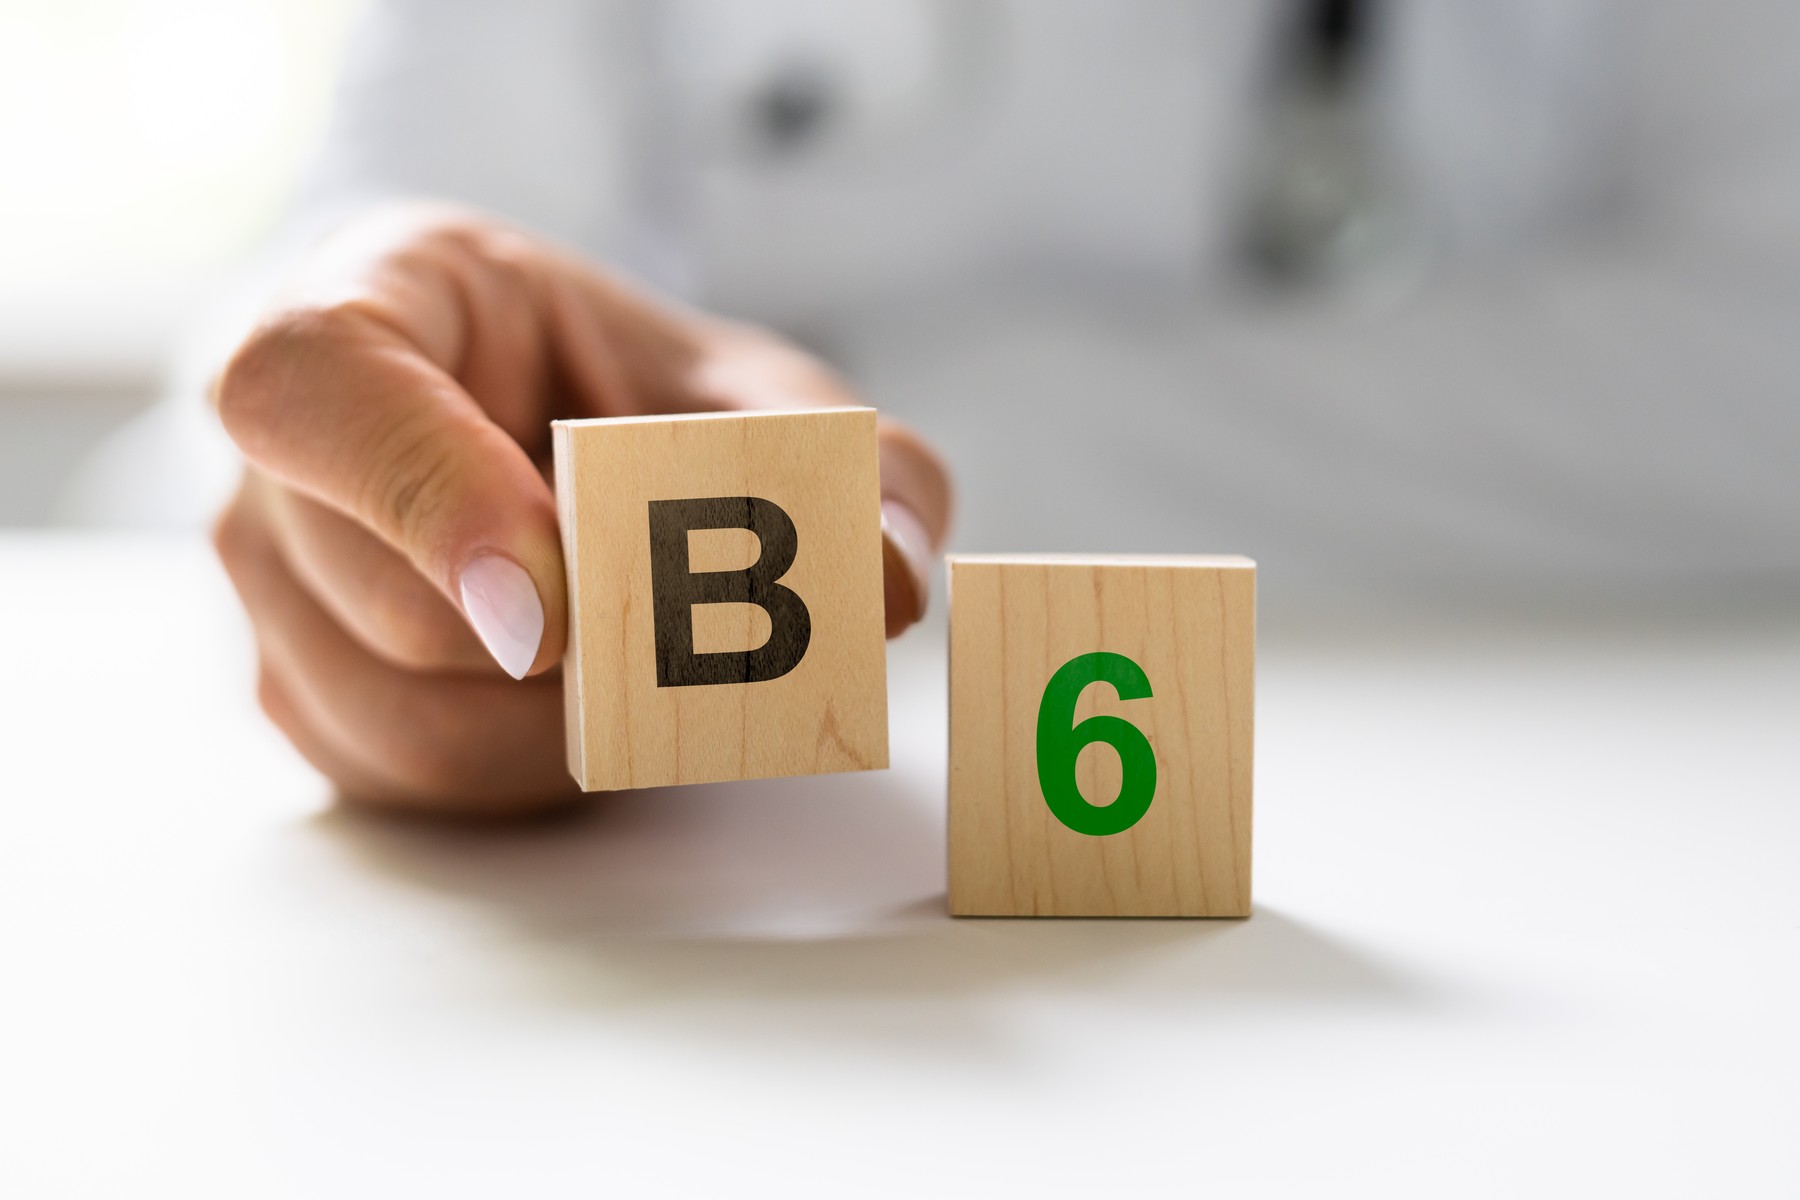 Roka, ki drži leseno kocko z oznako "B", poleg kocke z oznako "6", kar simbolizira vitamin B6.